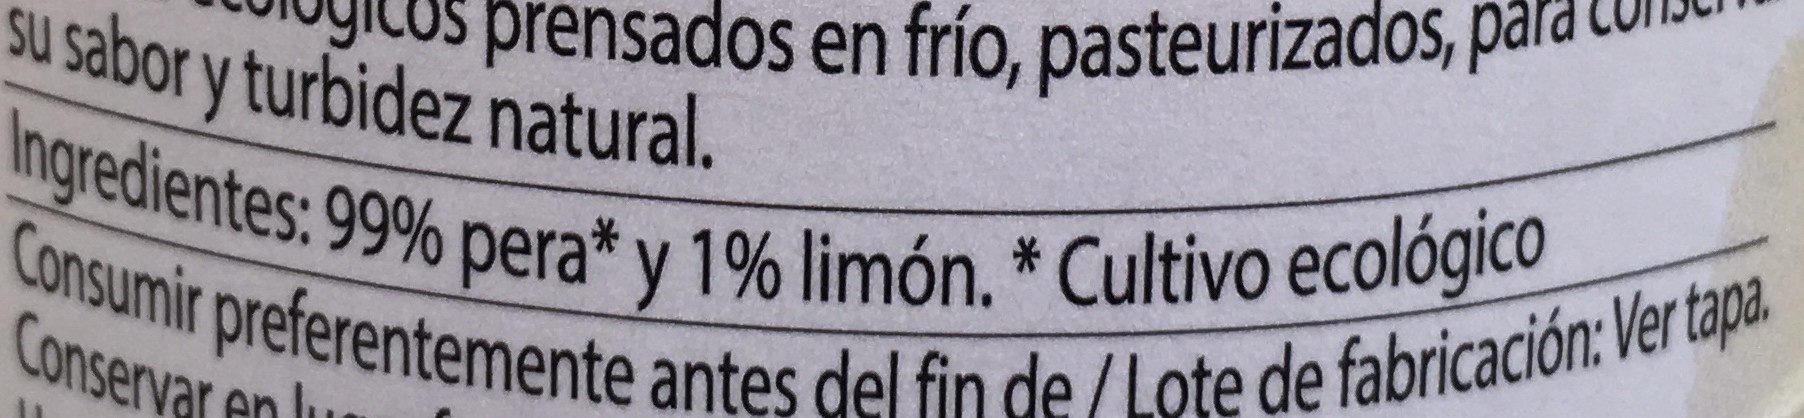 Zumo de pera y limón - Ingredientes - fr